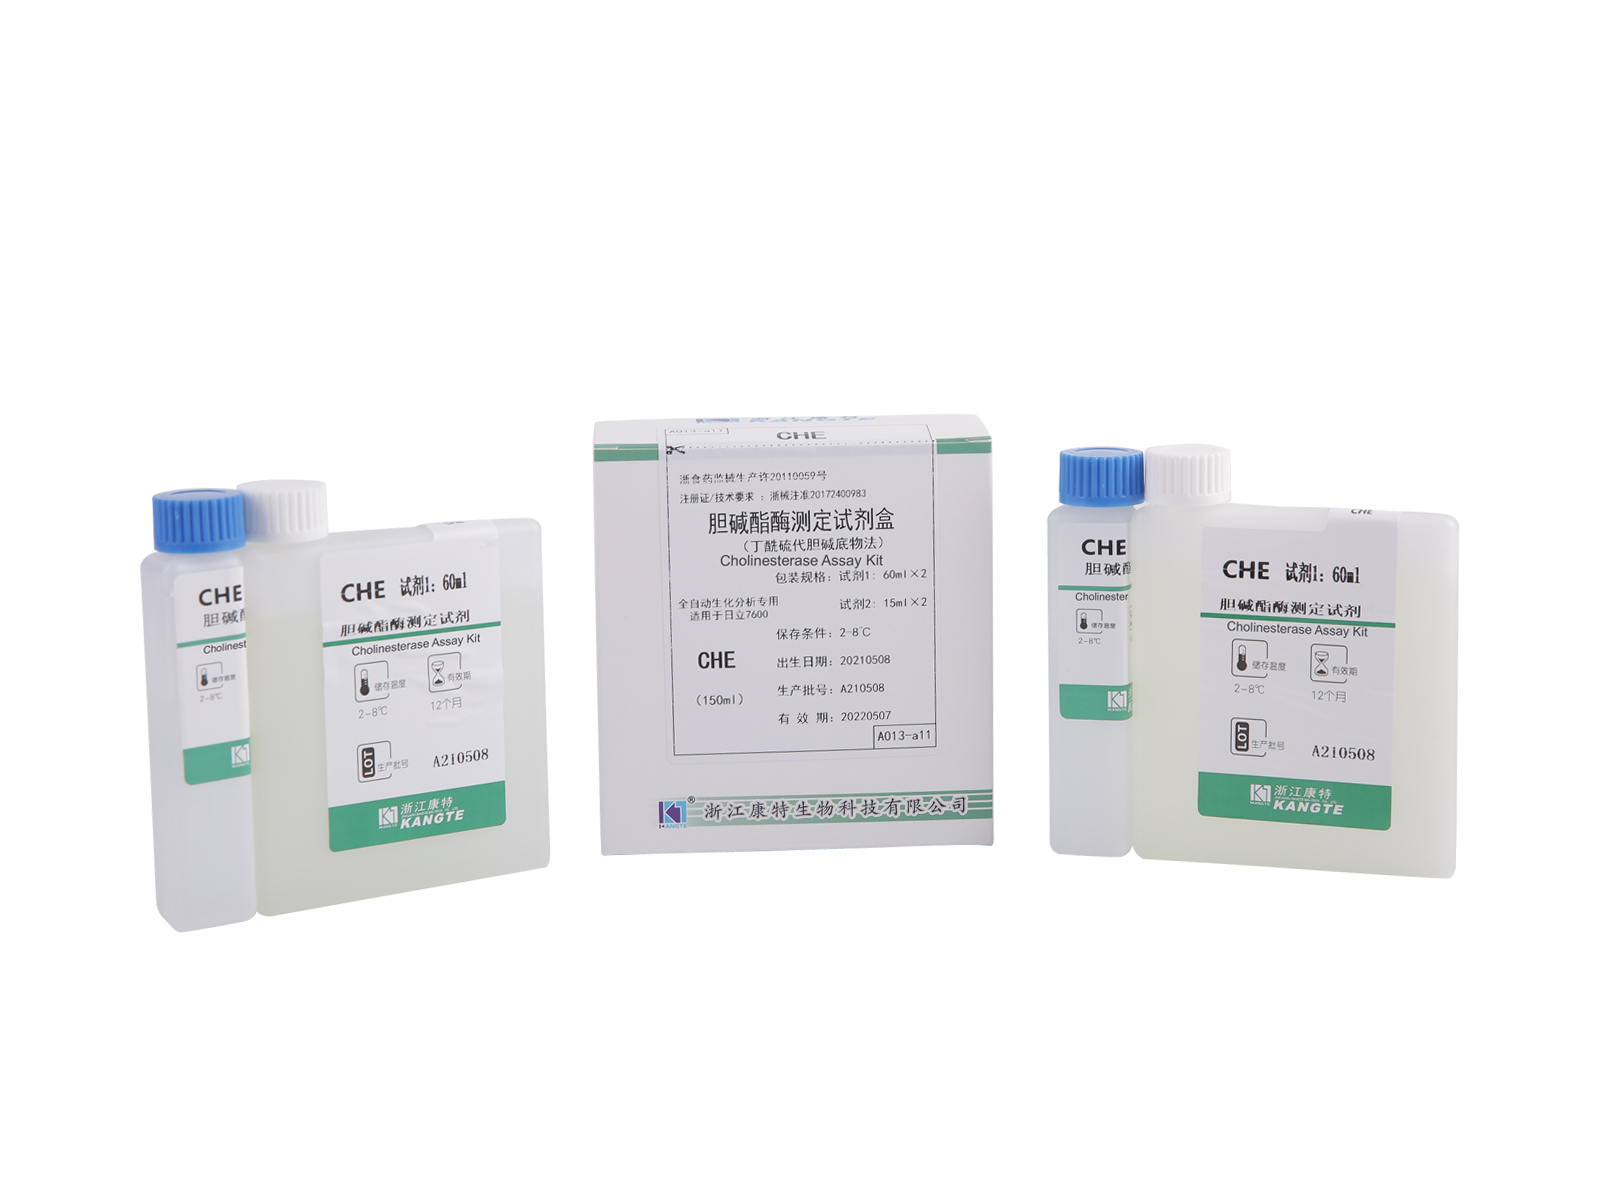 【CHE】 Kit de testare a colinesterazei (Metoda substratului butiriltiocolină)